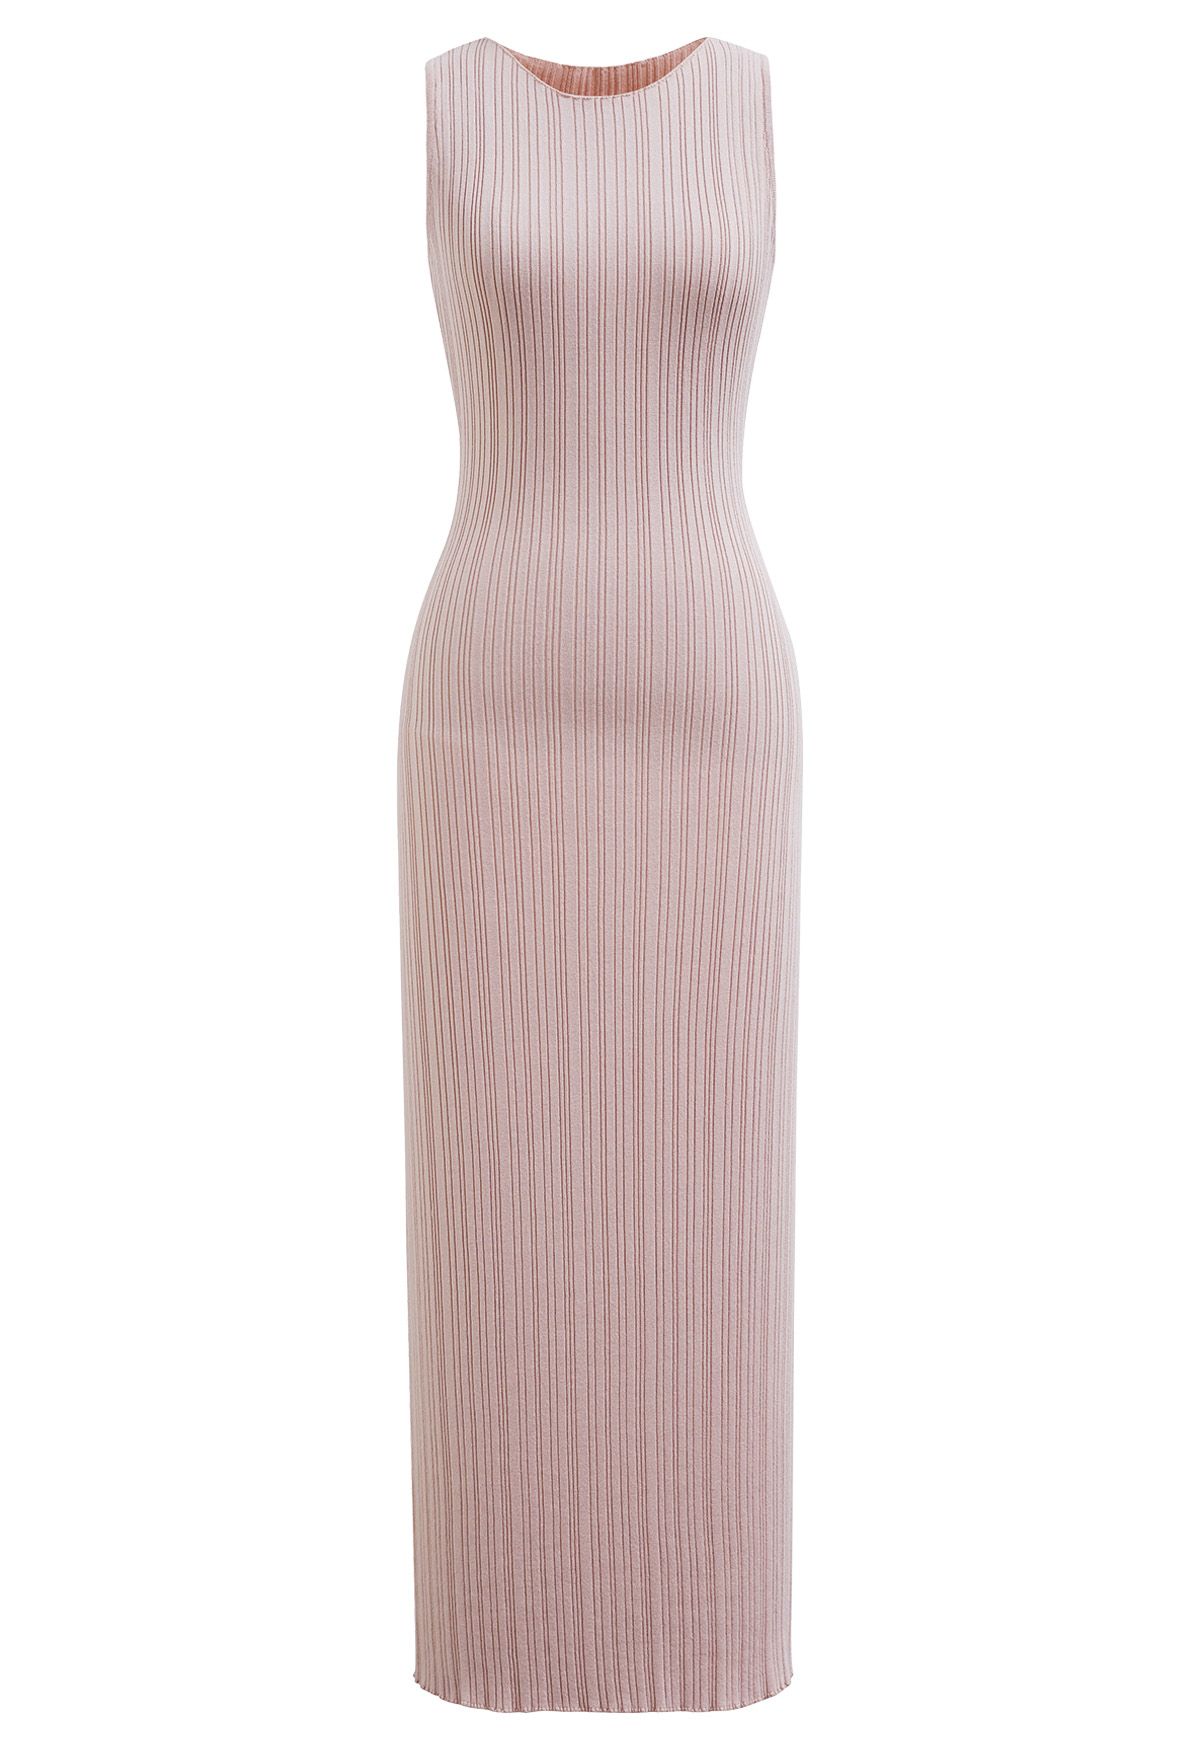 فستان ماكسي منسوج بدون أكمام بفتحة خلفية باللون الوردي